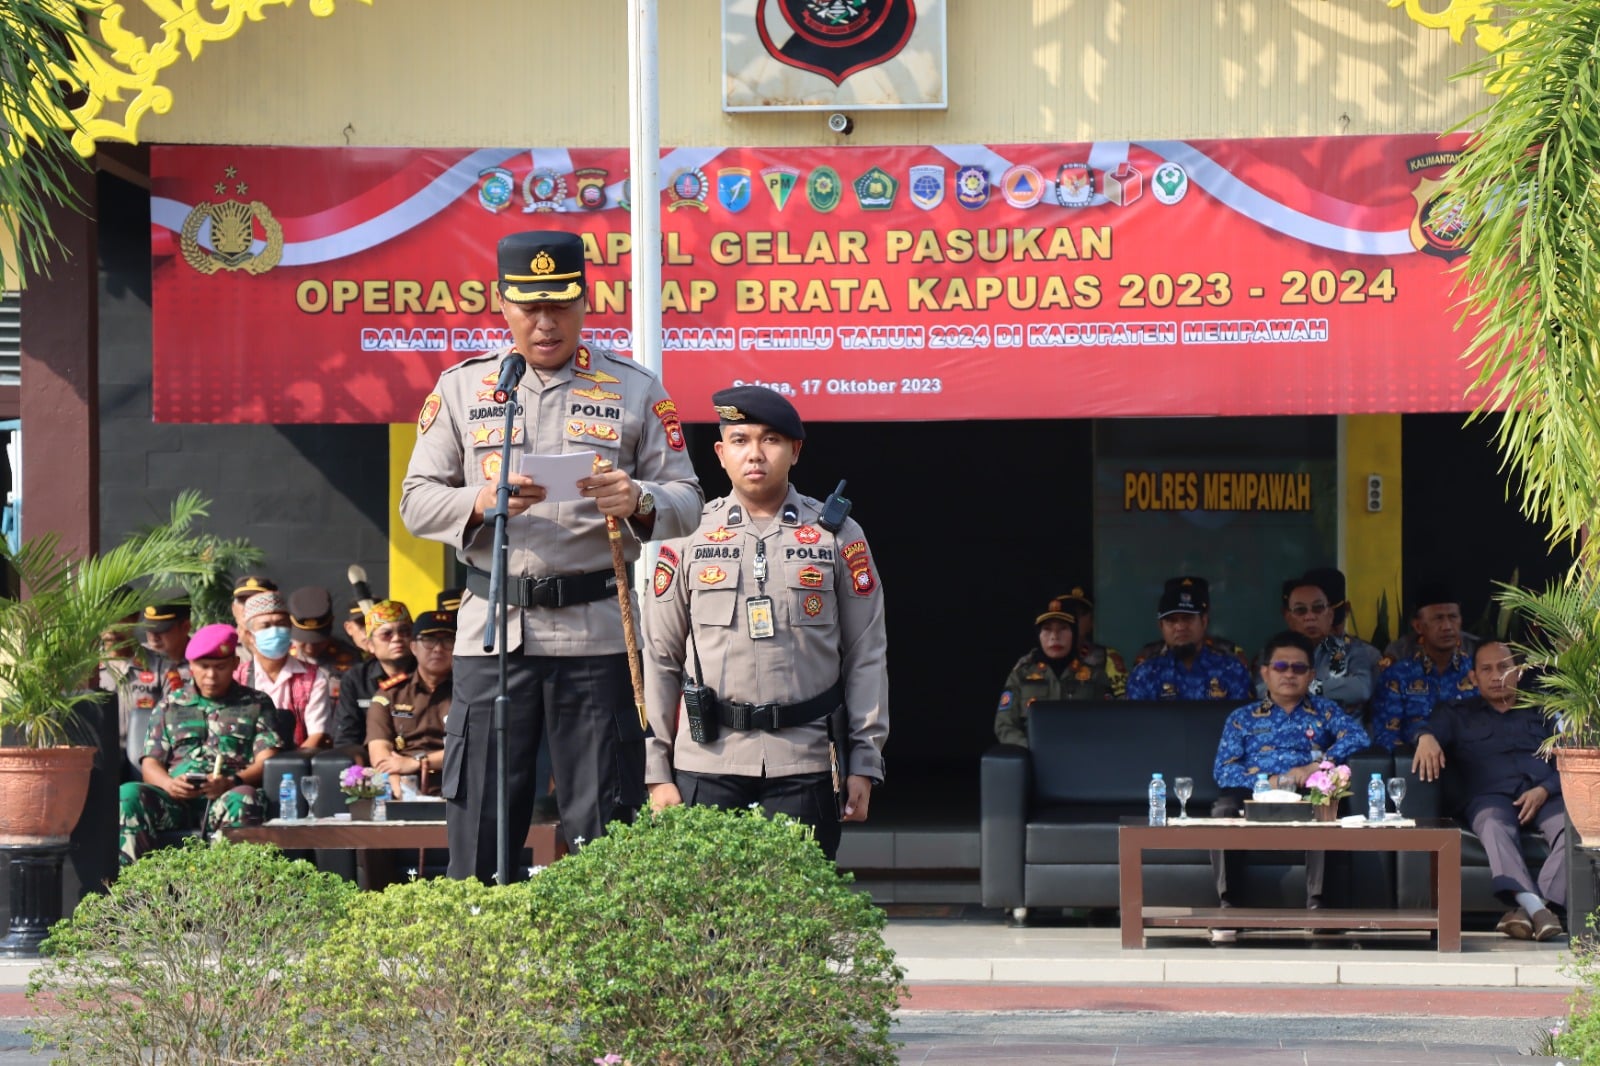 Kapolres Mempawah, AKBP Sudarsono memimpin Apel Gelar Pasukan Operasi Terpusat Mantap Brata Kapuas 2023 - 2024, di halaman Mapolres Mempawah, Selasa (17/10/2023). (Foto: Polres Mempawah)